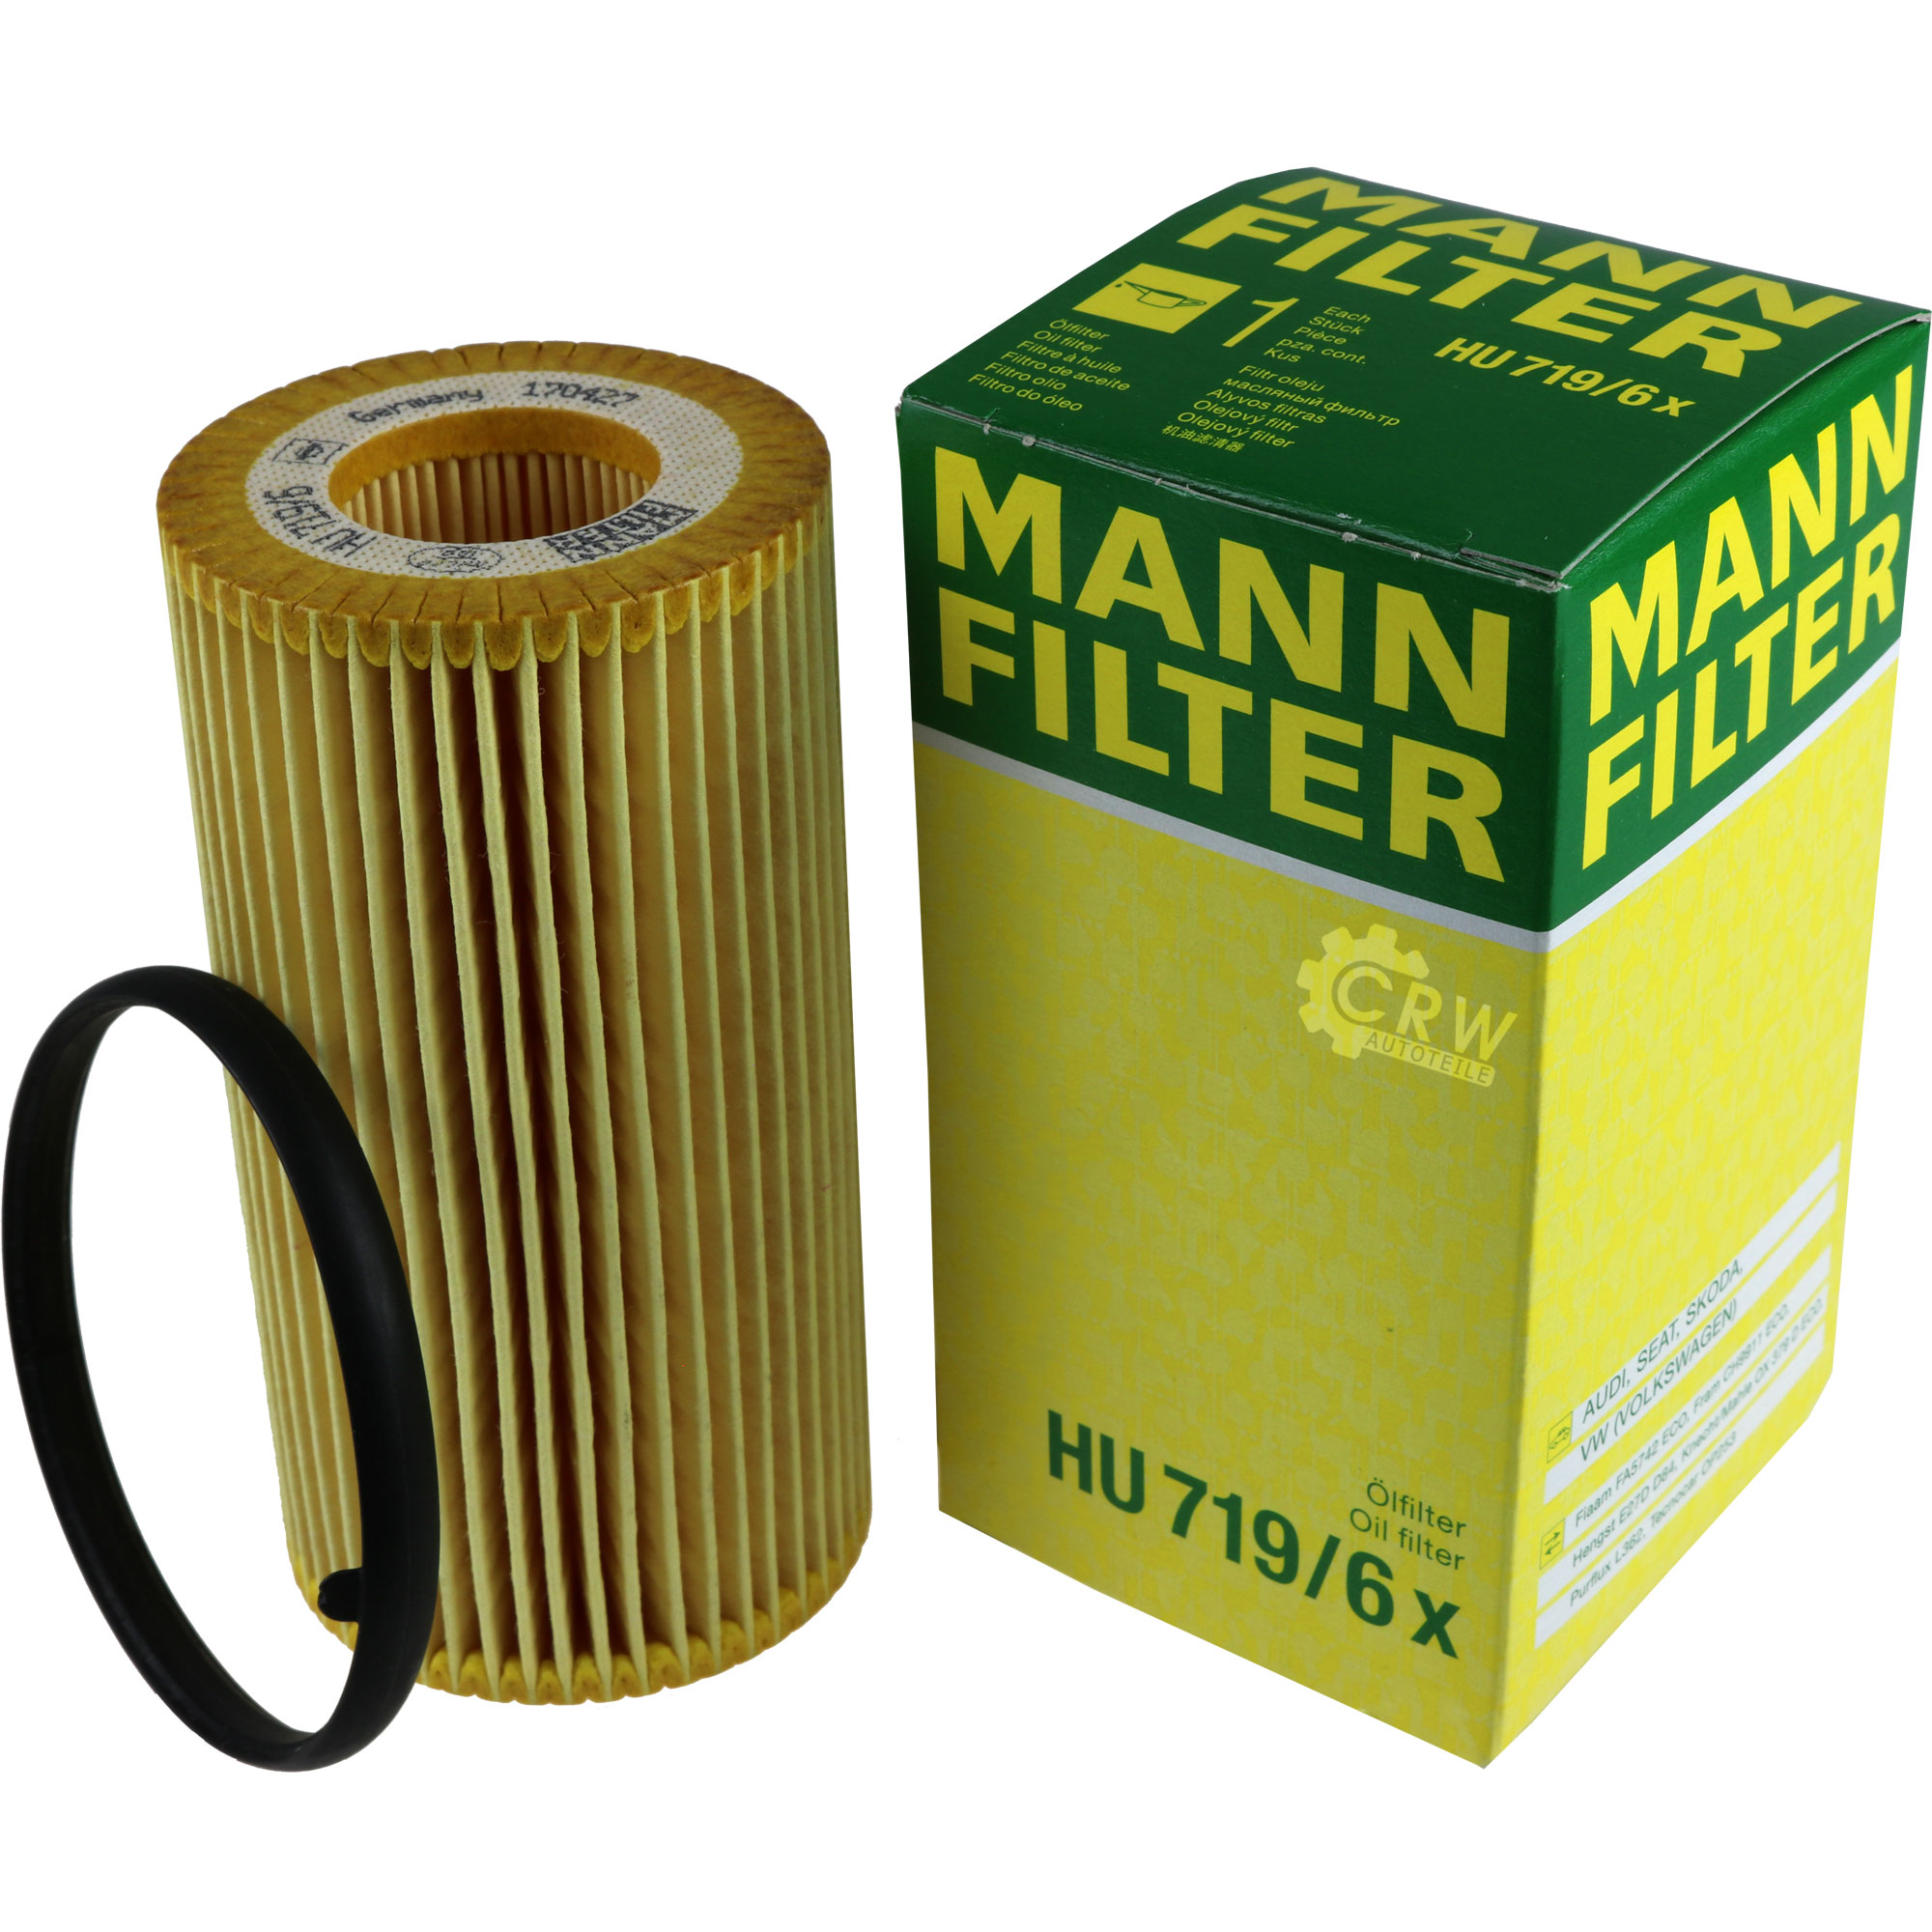 MANN-FILTER Ölfilter HU 719/6 x Oil Filter